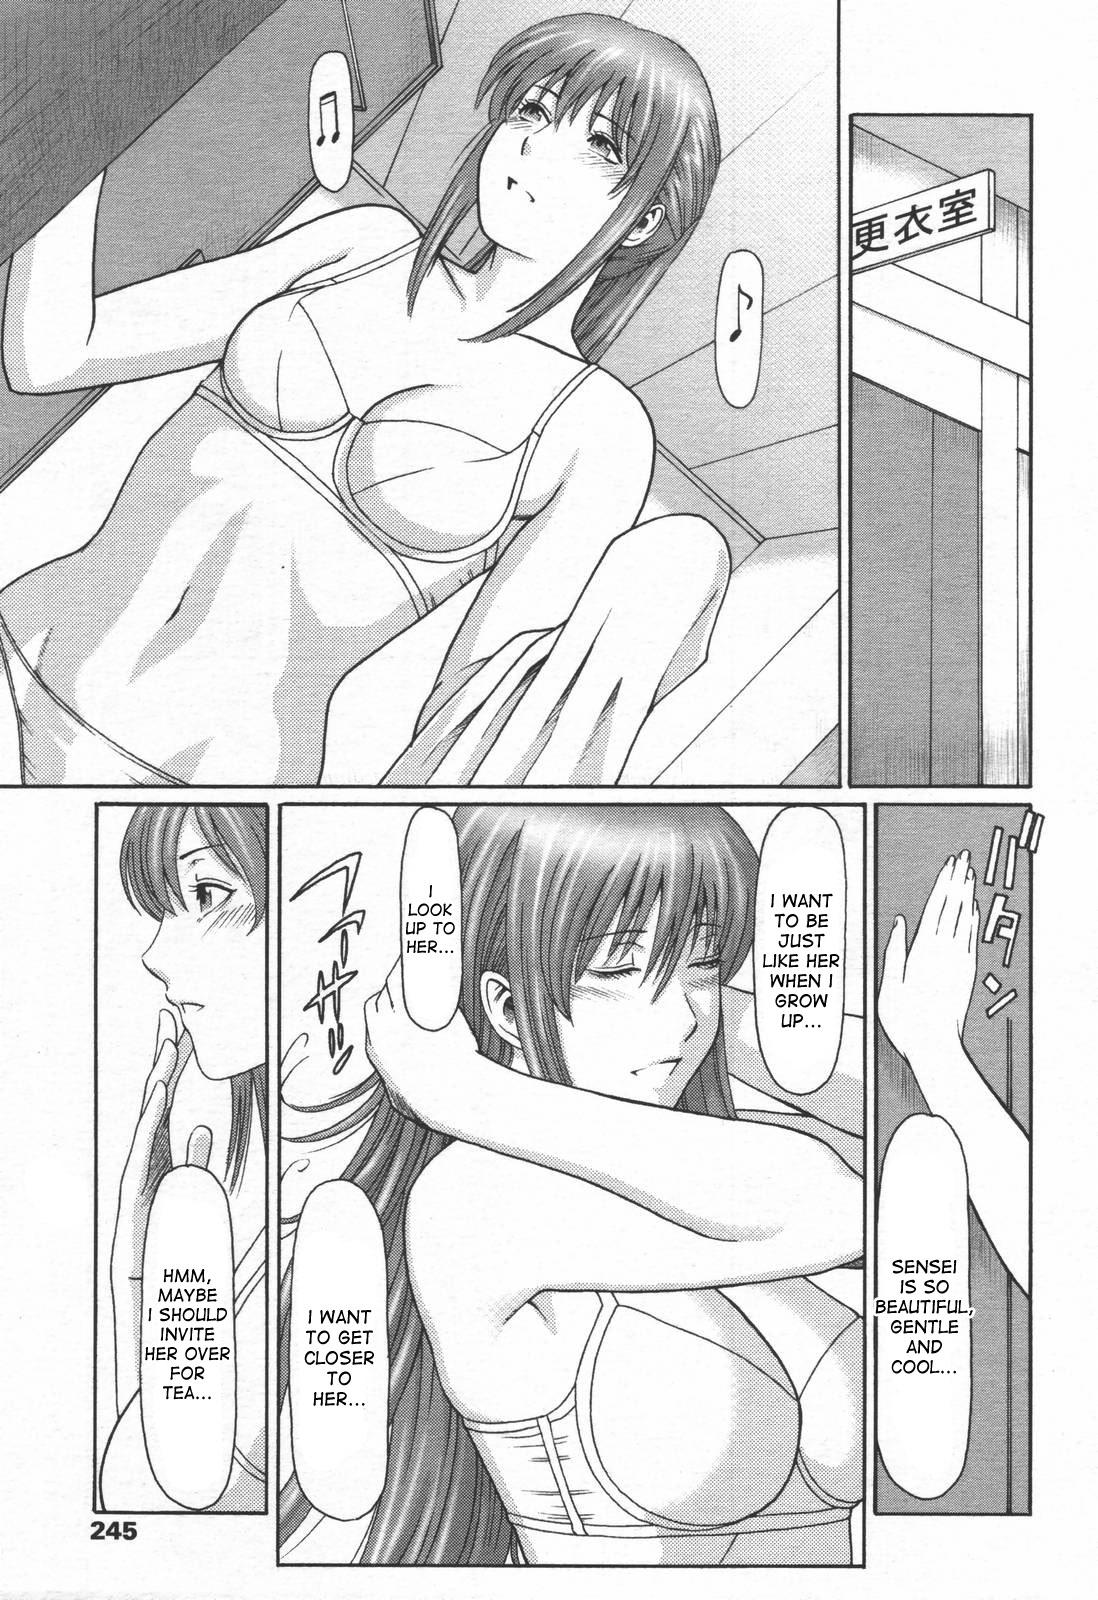 Daring Himitsu Club | The Secret Club Woman - Page 3